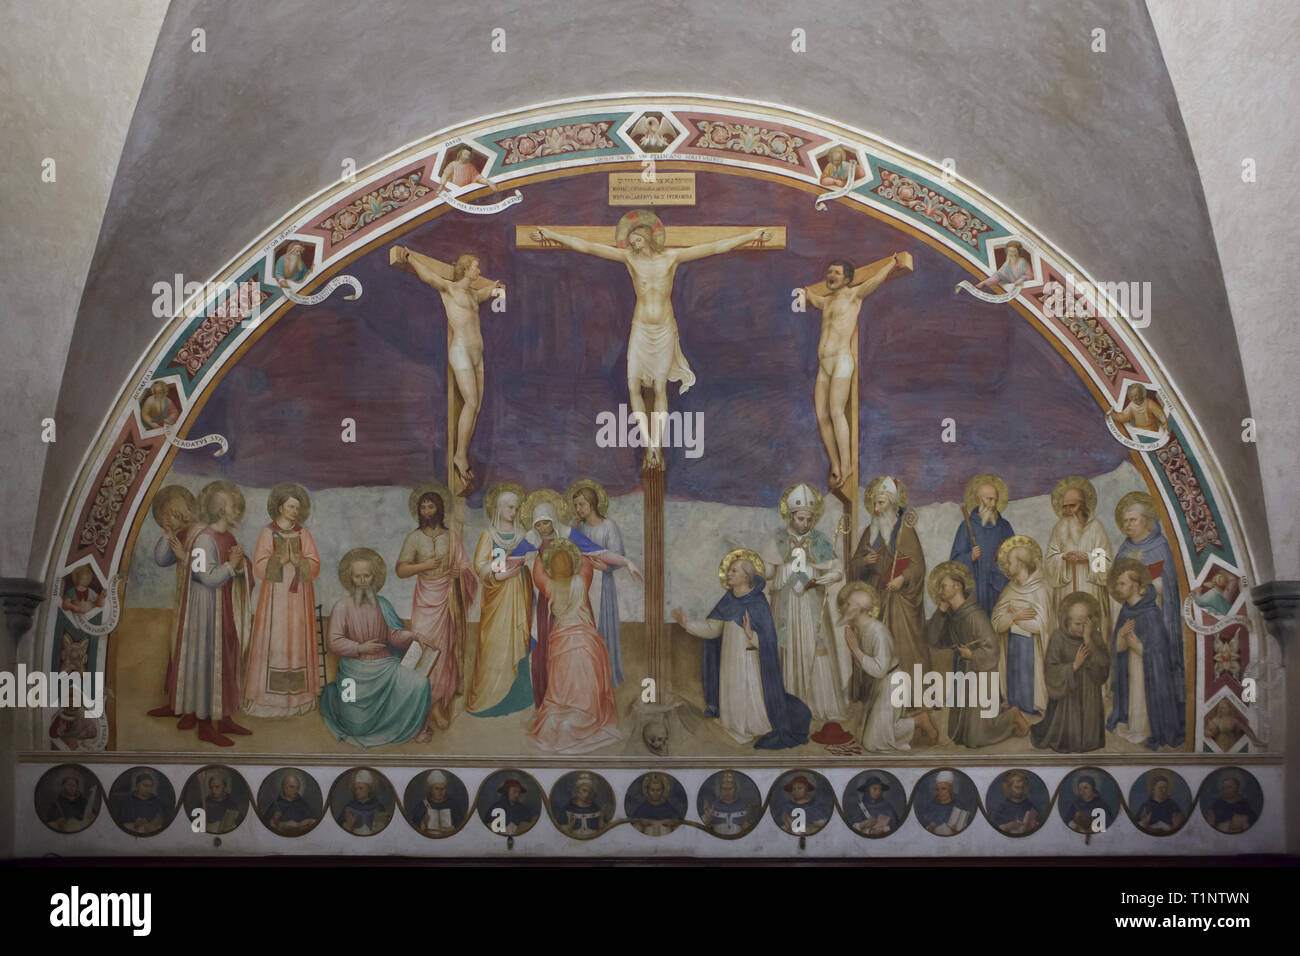 Fresco' Kreuzigung mit Heiligen von der italienischen Frührenaissance Maler Fra Angelico (1441-1442) in der San Marco Kloster (Convento di San Marco), nun das San Marco Museum (Museo Nazionale di San Marco) in Florenz, Toskana, Italien. Stockfoto